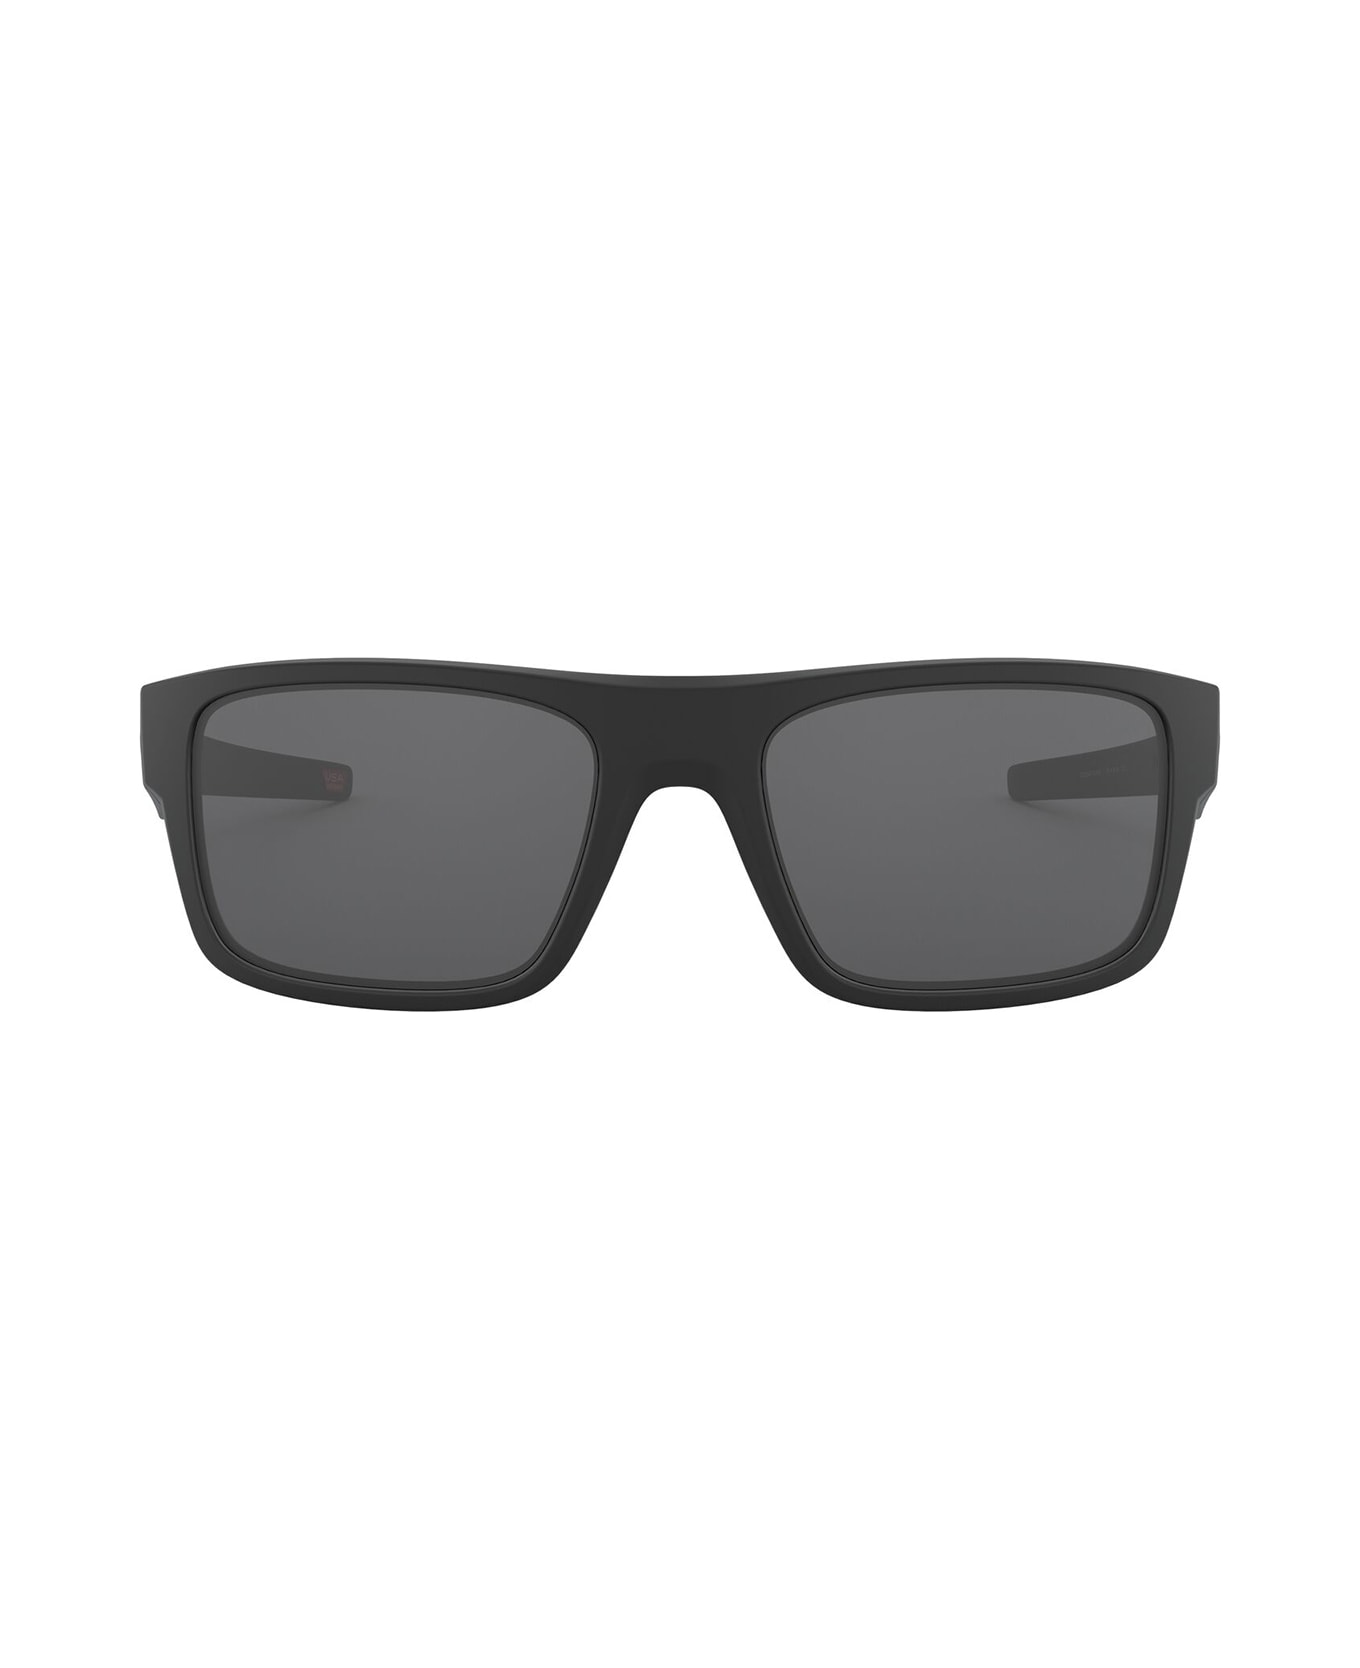 Oakley Oo9367 Matte Black Sunglasses - Matte Black